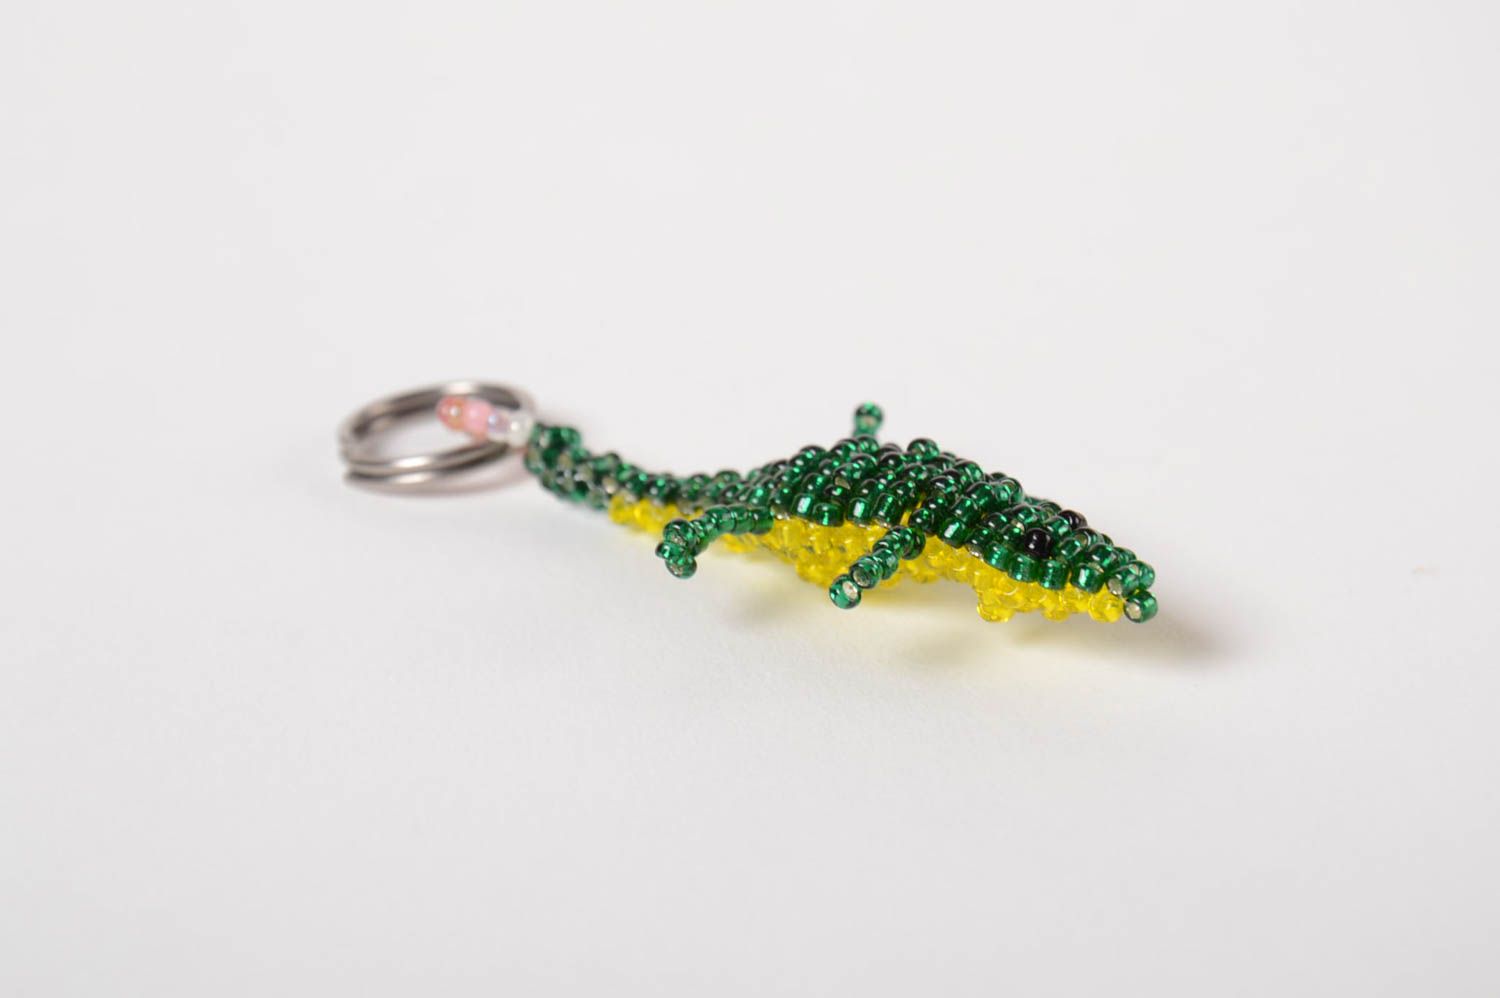 Брелок для ключей из бисера ручной работы красивый в виде ящерицы авторский фото 4